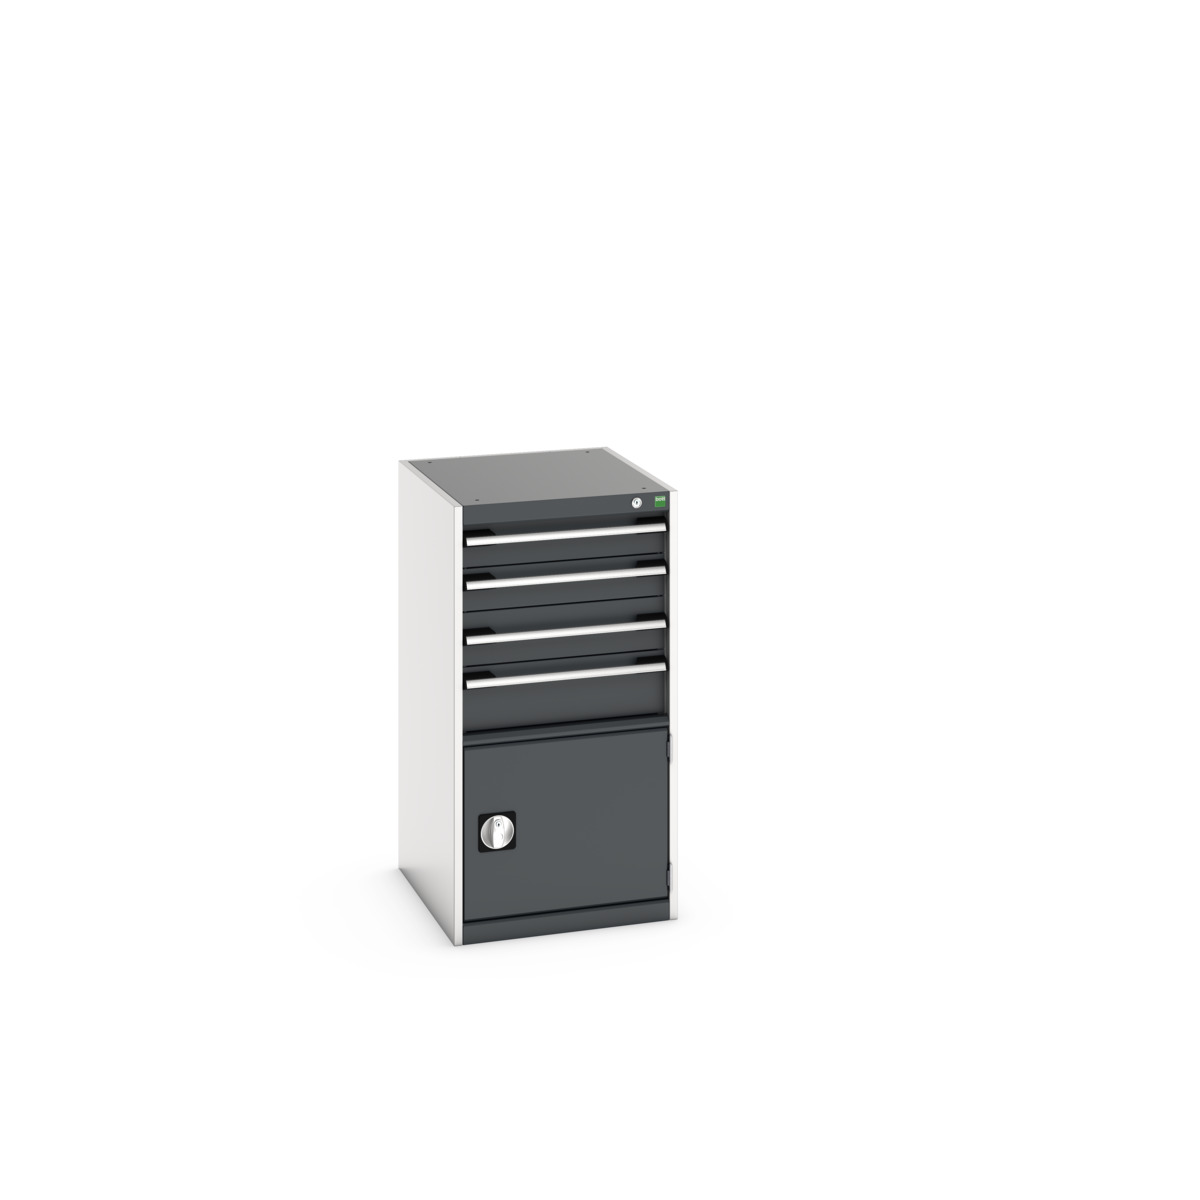 40018055. - cubio drawer-door cabinet